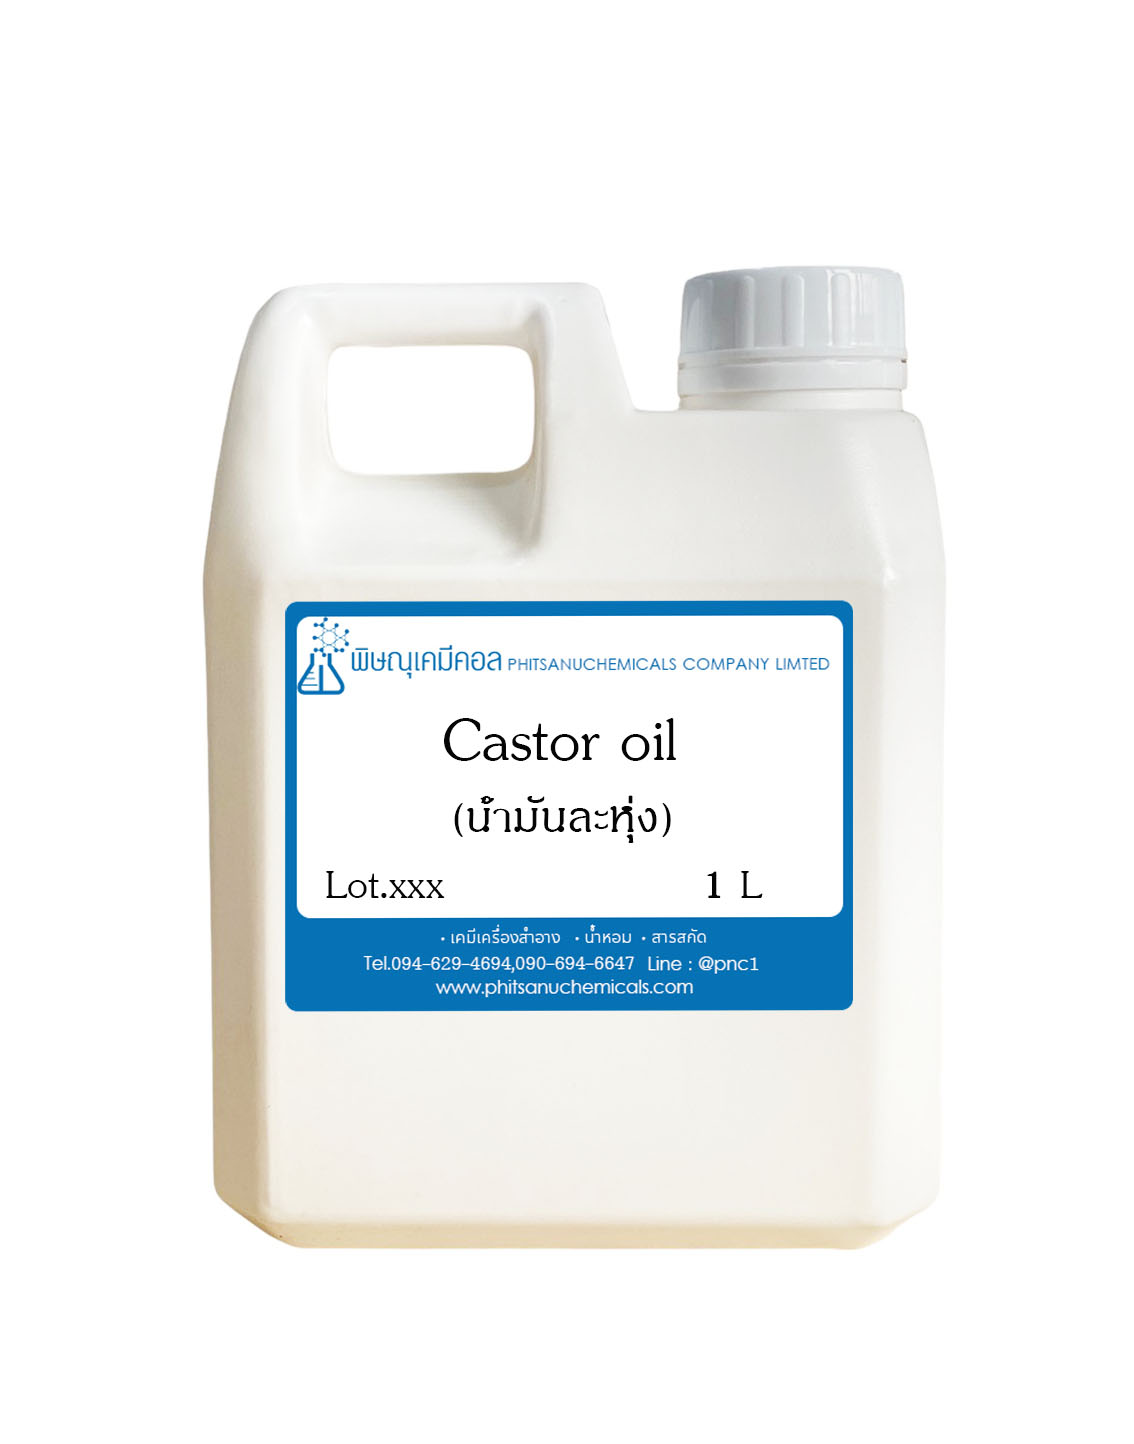 Castor oil (น้ำมันละหุ่ง) 1 KG